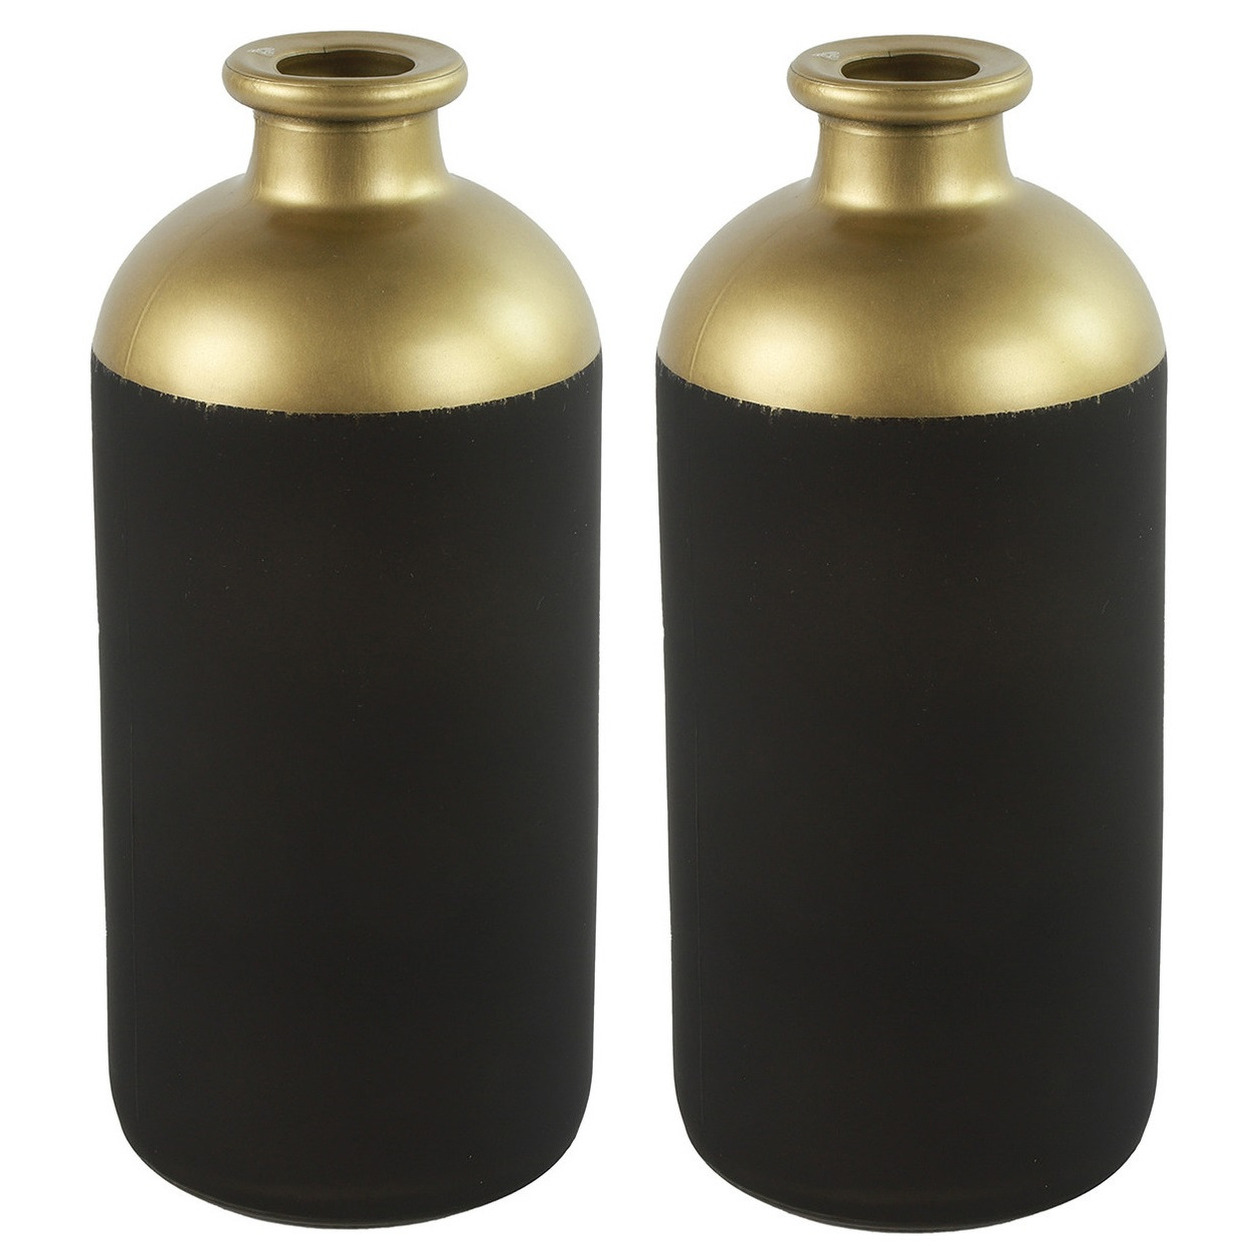 Countryfield Bloemen-deco vaas 2x zwart-goud glas luxe fles vorm D11 x H25 cm